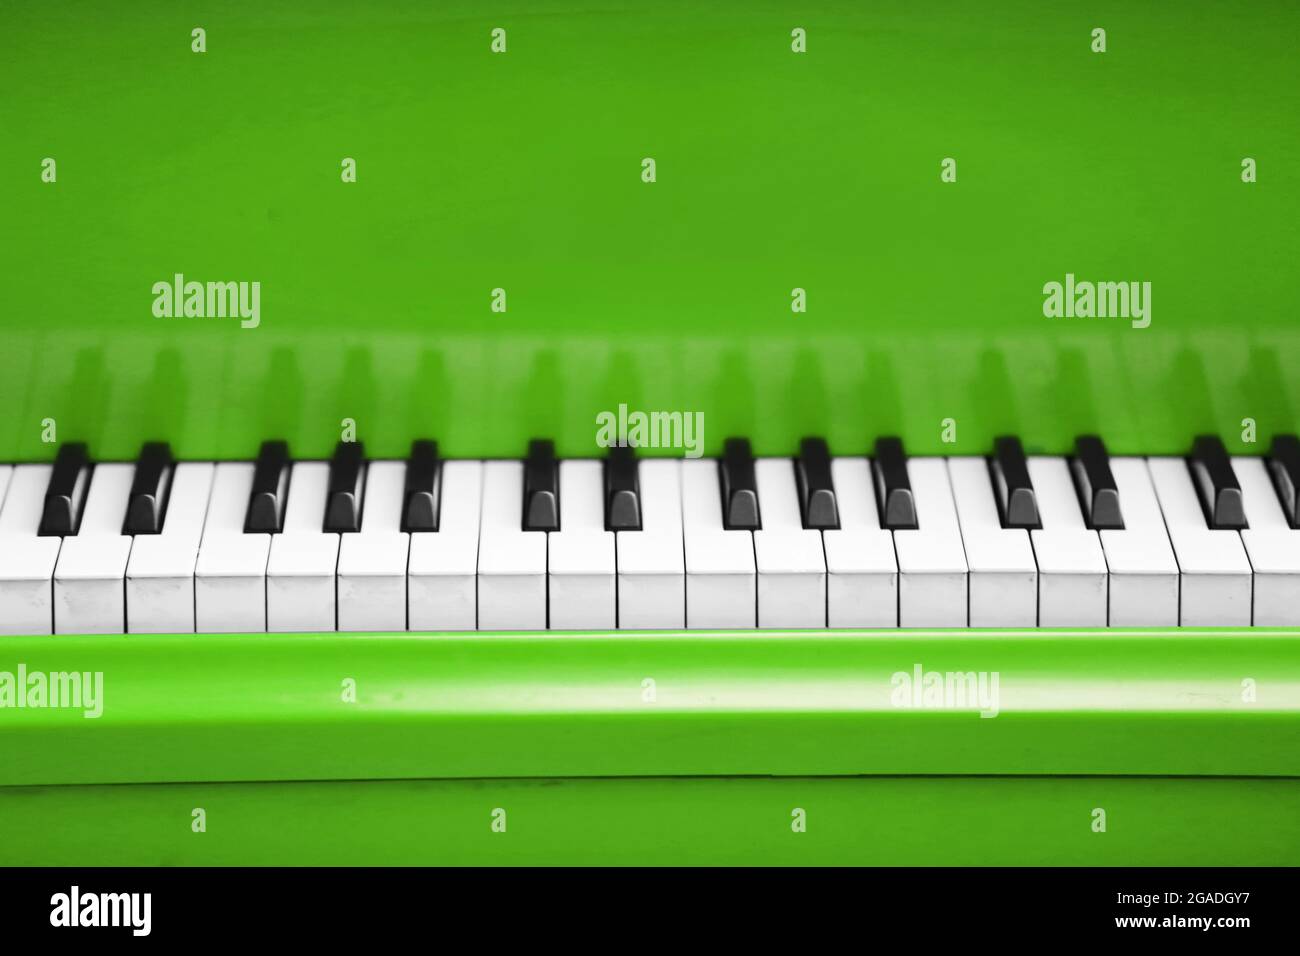 Piano keys of green piano close up Stock Photo - Alamy